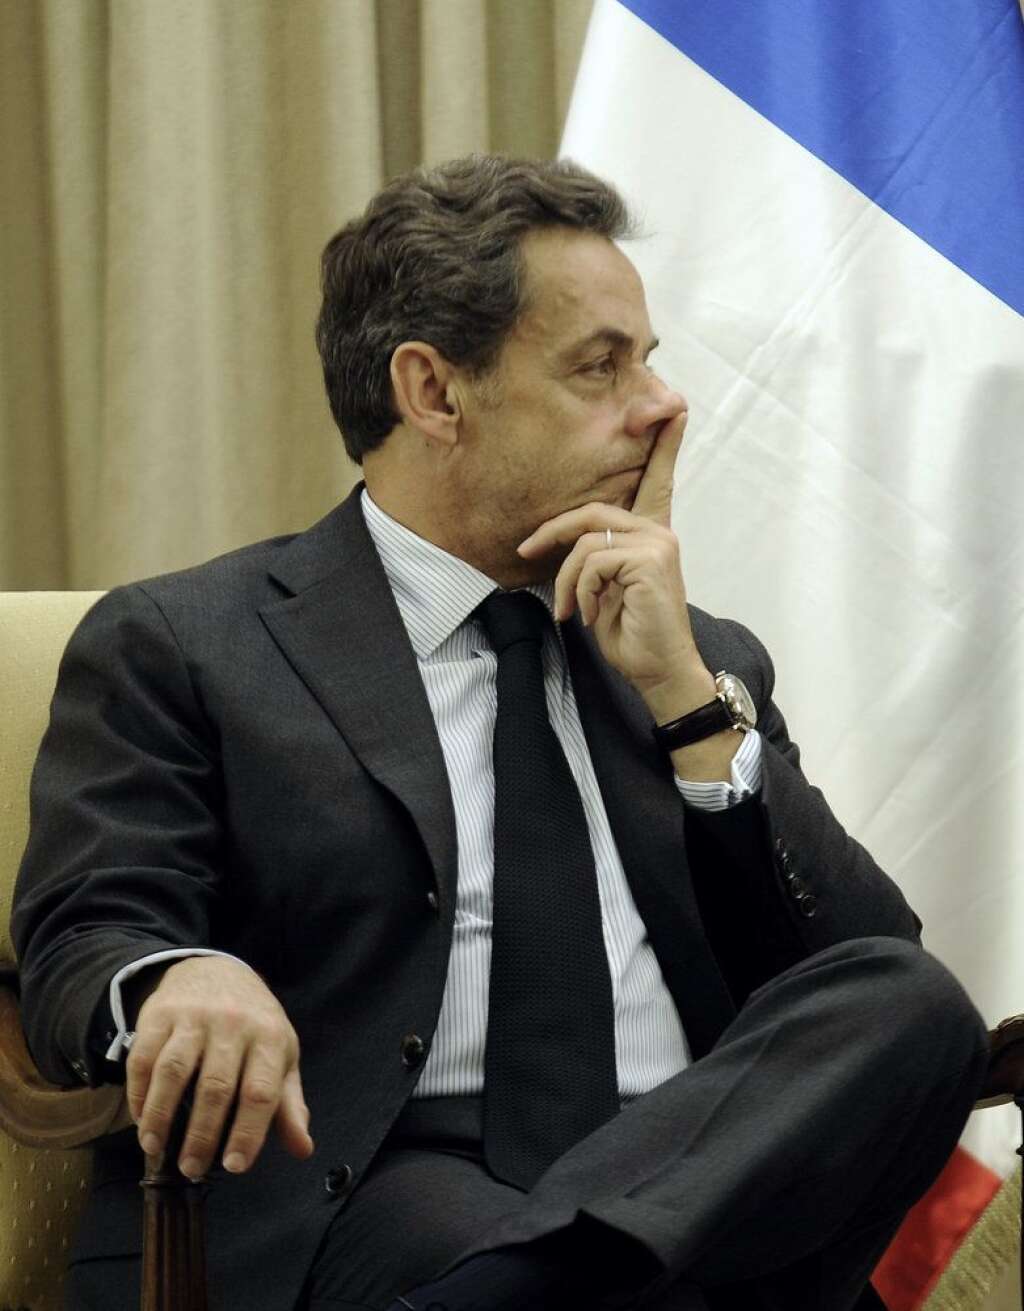 Nicolas Sarkozy - <strong>Statut:</strong> Porte-parole de la campagne d'Edouard Balladur à l'époque.  <strong>Rôle supposé:</strong> Jamais mis en examen dans l'affaire Karachi, il est soupçonné par les médias d'avoir été "l'homme orchestre de la campagne" de Balladur. Il a toujours nié toute implication dans l'affaire, précisant qu'il n'était pas trésorier de la campagne, malgré le fait que les personnes mises en examen sont pour la plupart d'anciens proches.